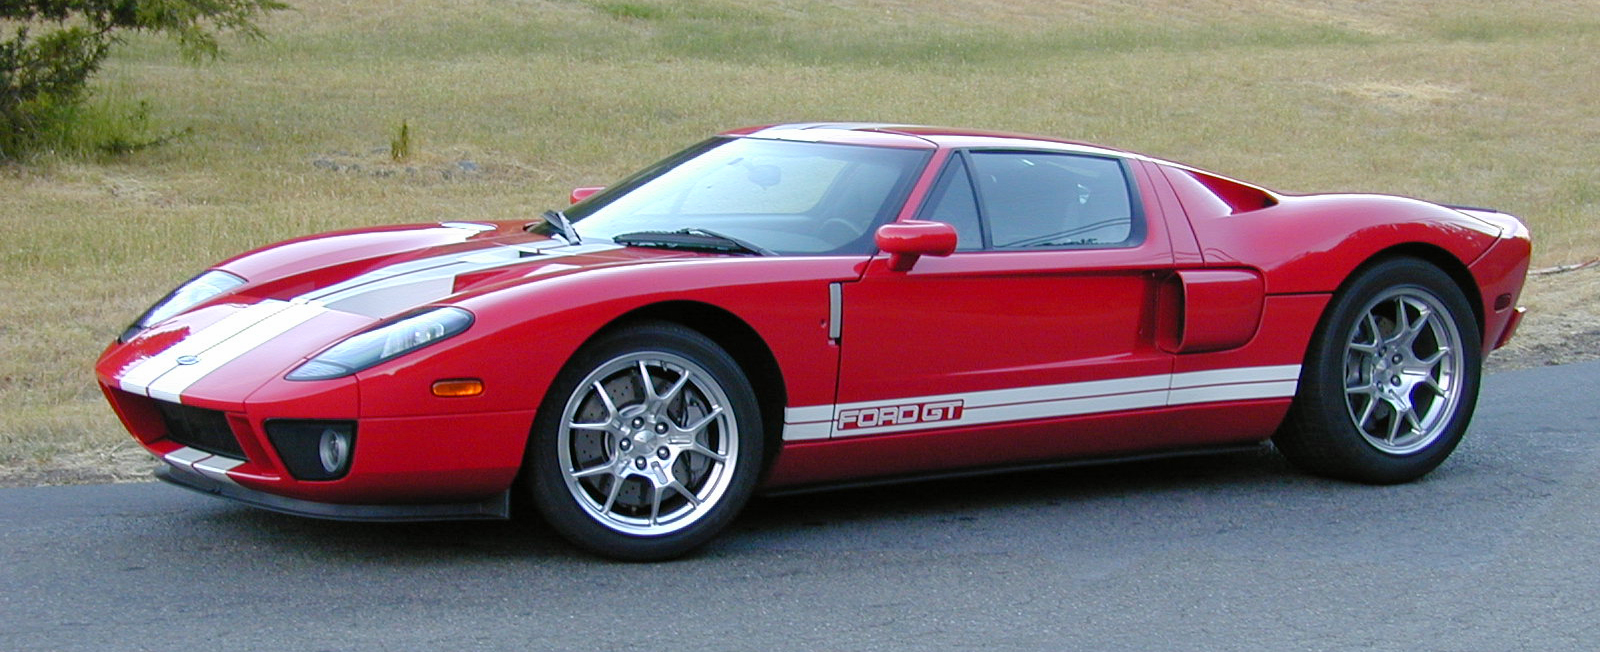 2005 Ford GT Test Car